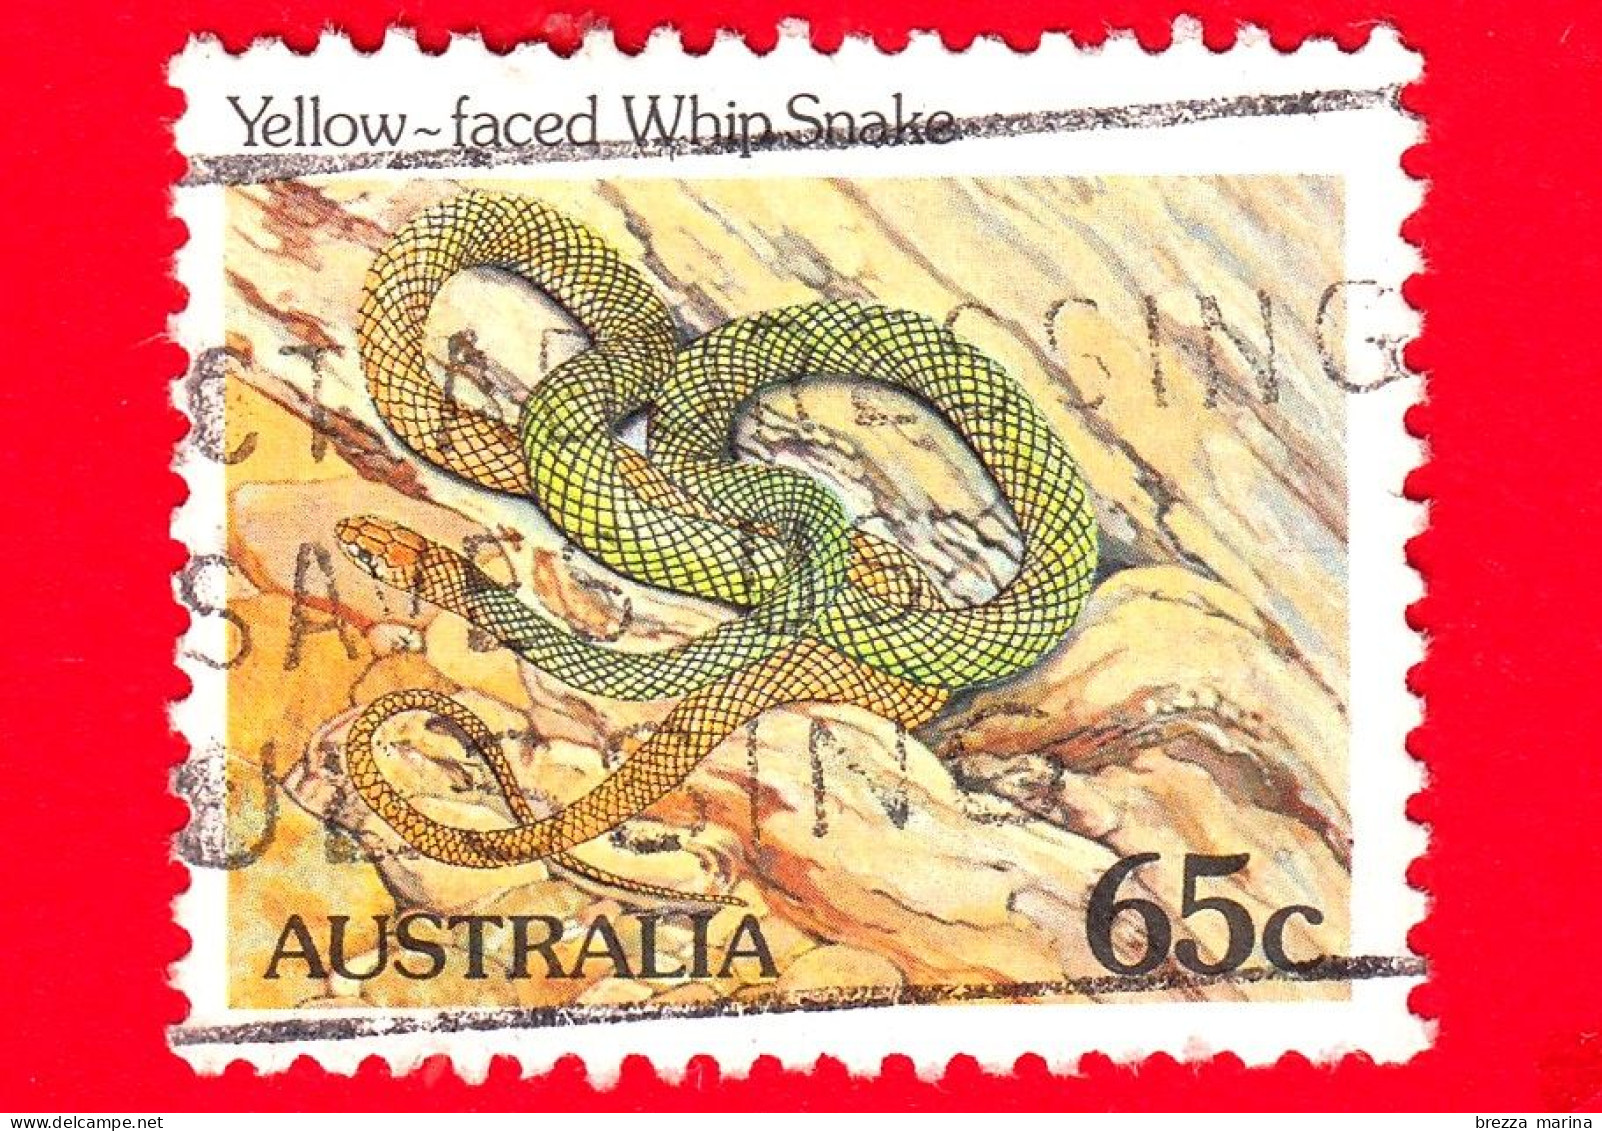 AUSTRALIA - Usato - 1984 - Rettili - Serpenti - Yellow-faced Whip Snake  - 65 - Oblitérés